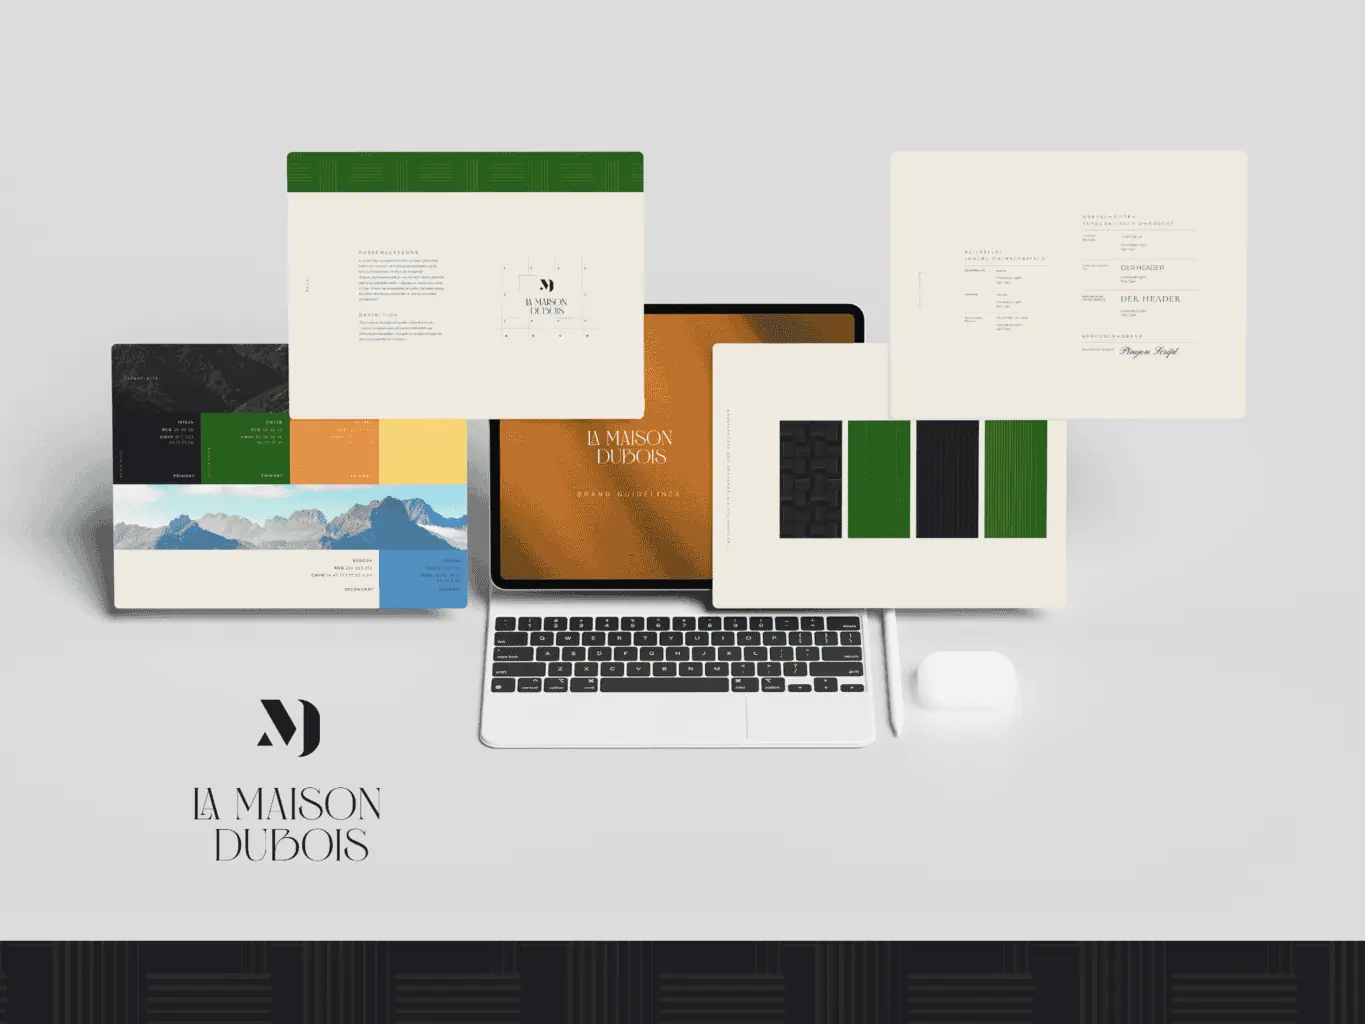 Corporate-Branding-Materialien für „La Maison Dubois“, einschließlich Website auf Laptop-Bildschirm, Broschüren, Visitenkarten und Briefkopf, entworfen und angeordnet auf einem neutralen Hintergrund.